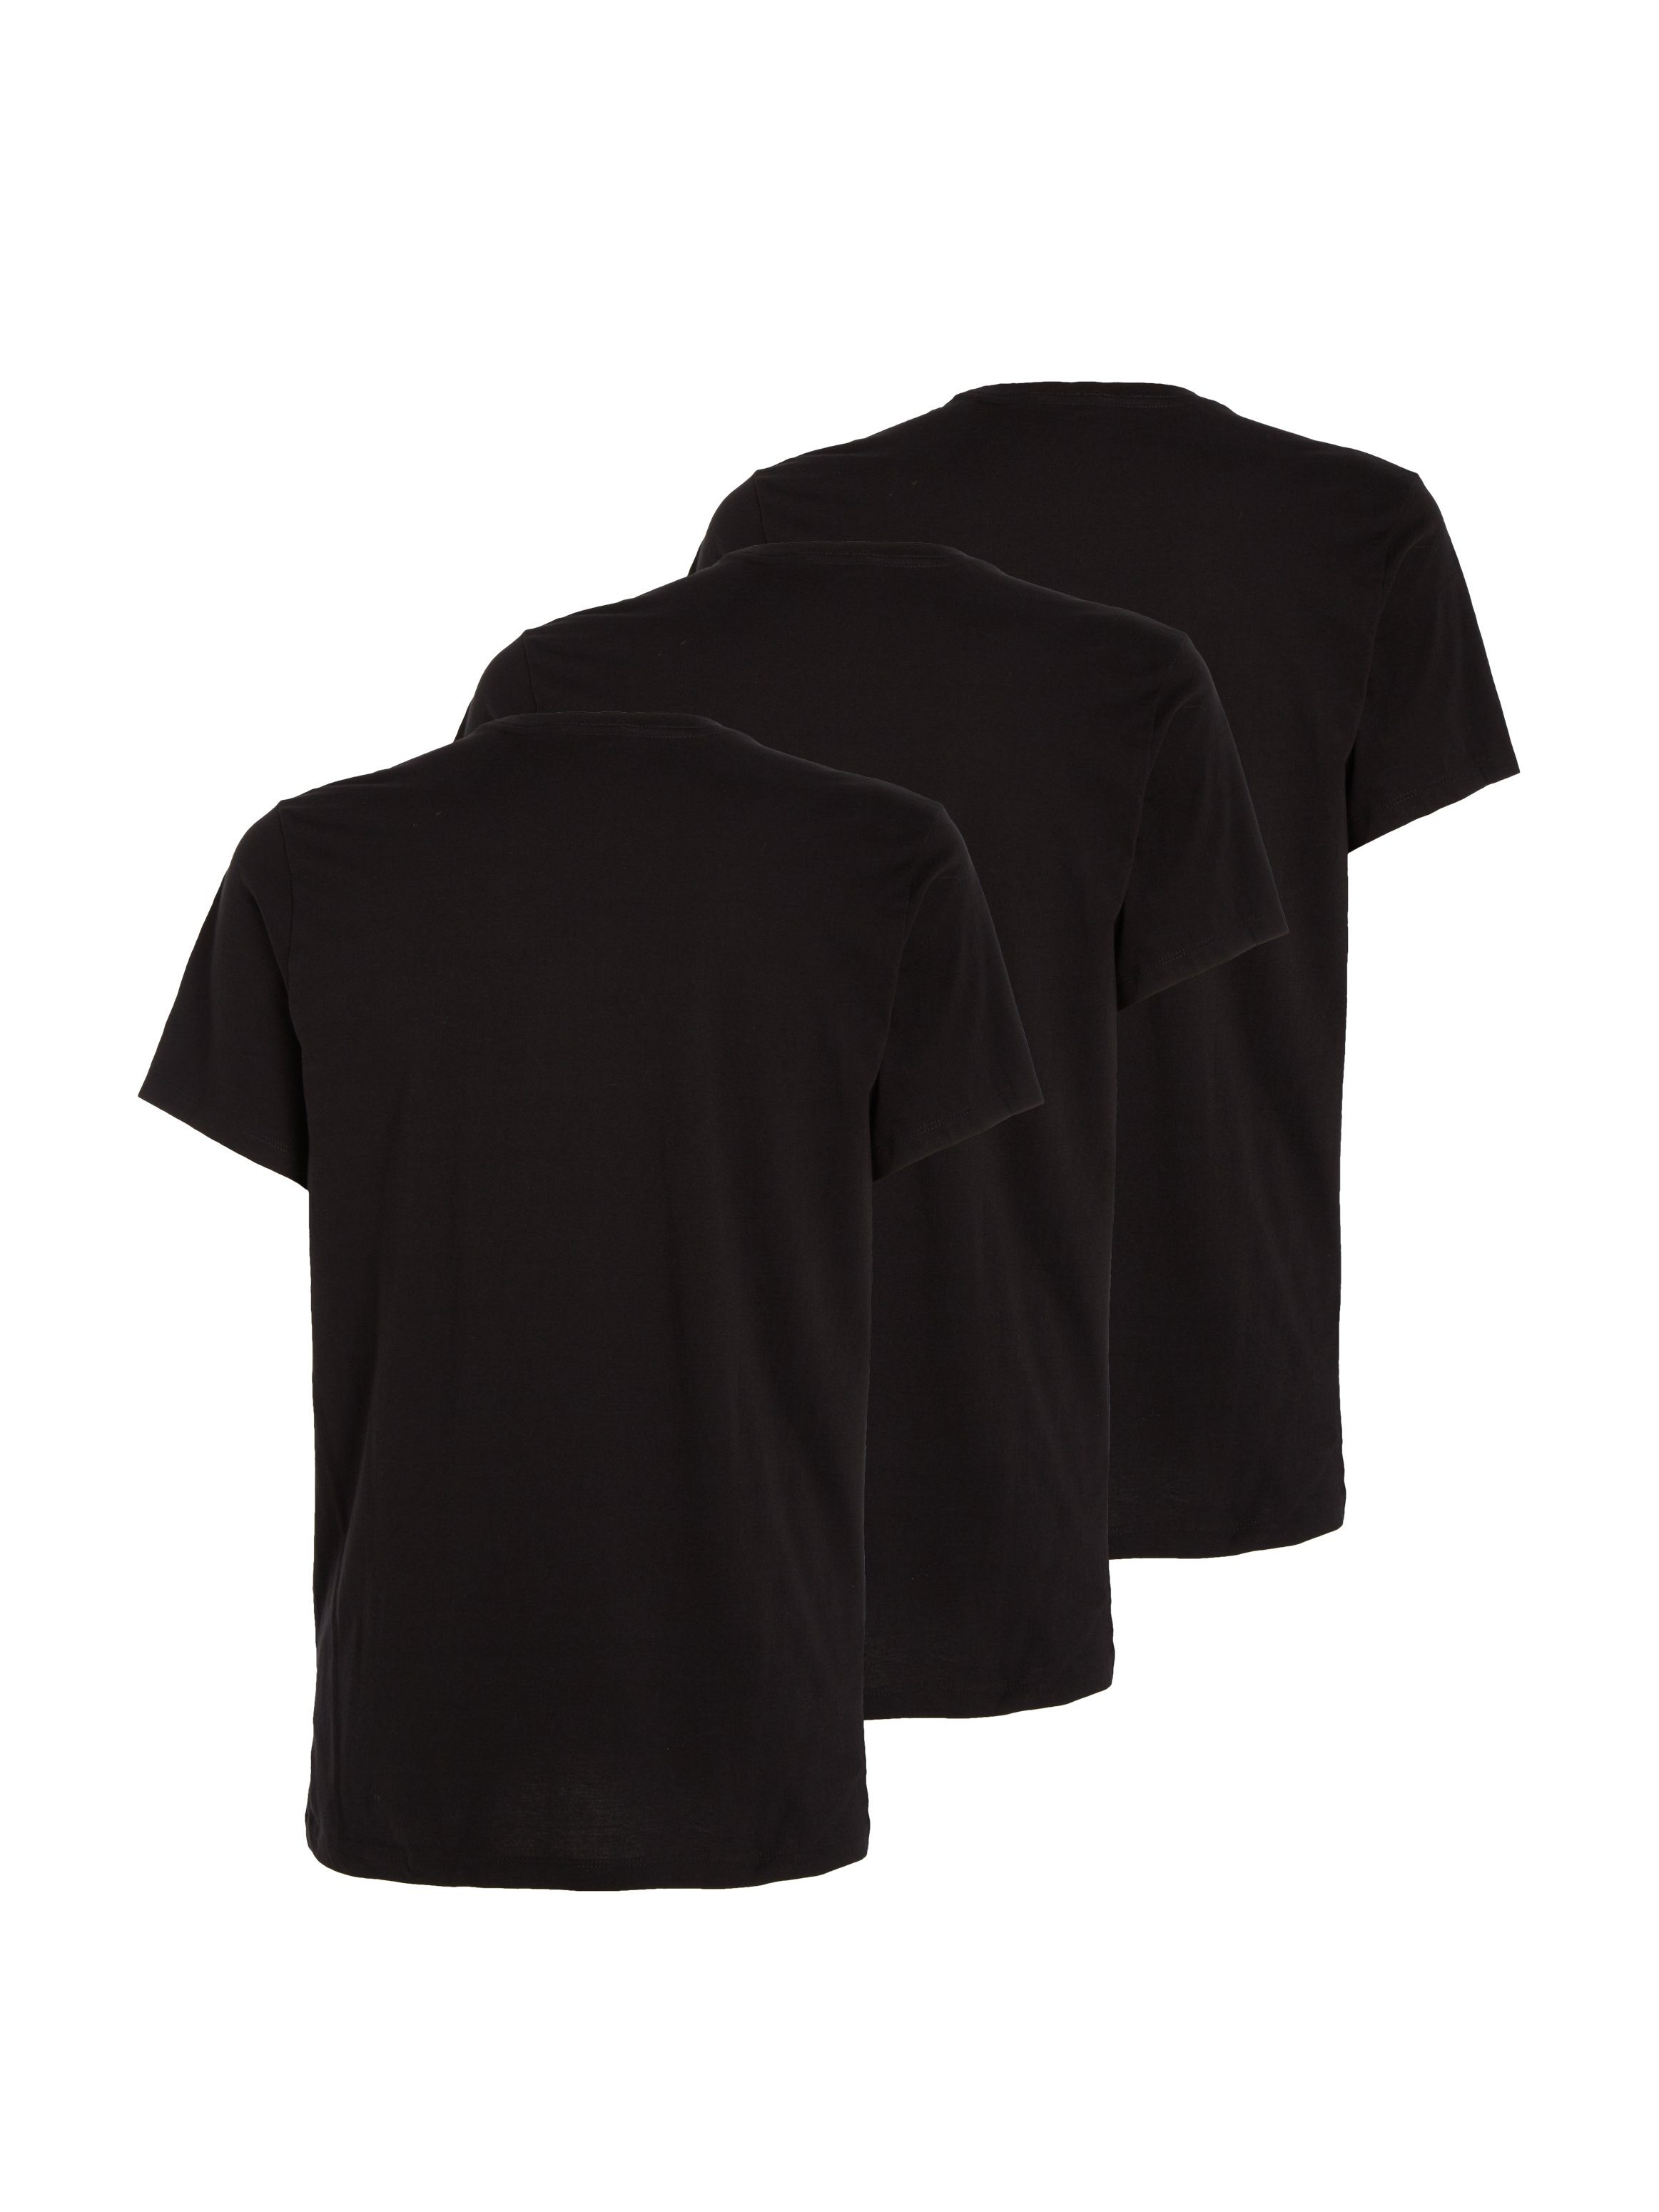 Calvin Klein Underwear (3er-Pack) uni schwarz T-Shirt